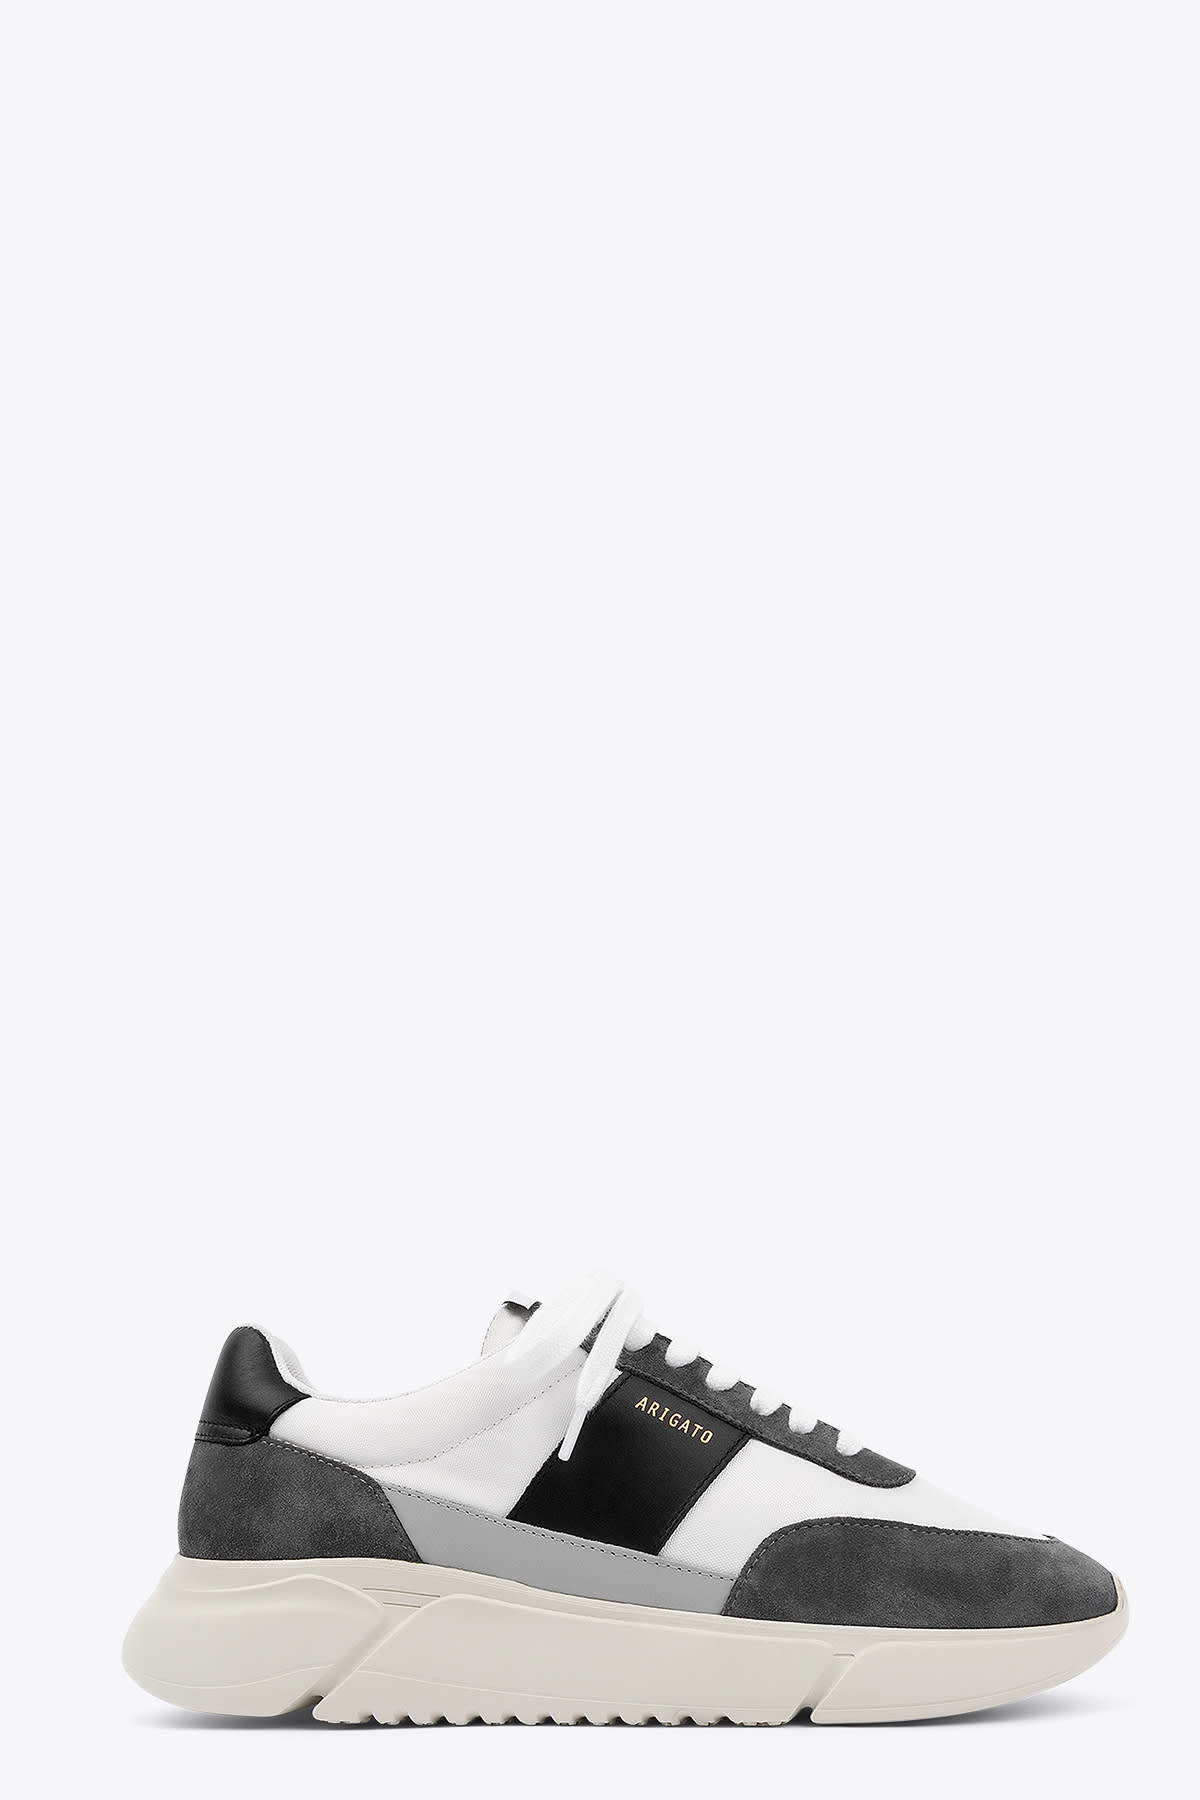 Axel Arigato 35043 Genesis Vintage Runner Leather and suede low top lace-up sneaker- Genesis vintage runner